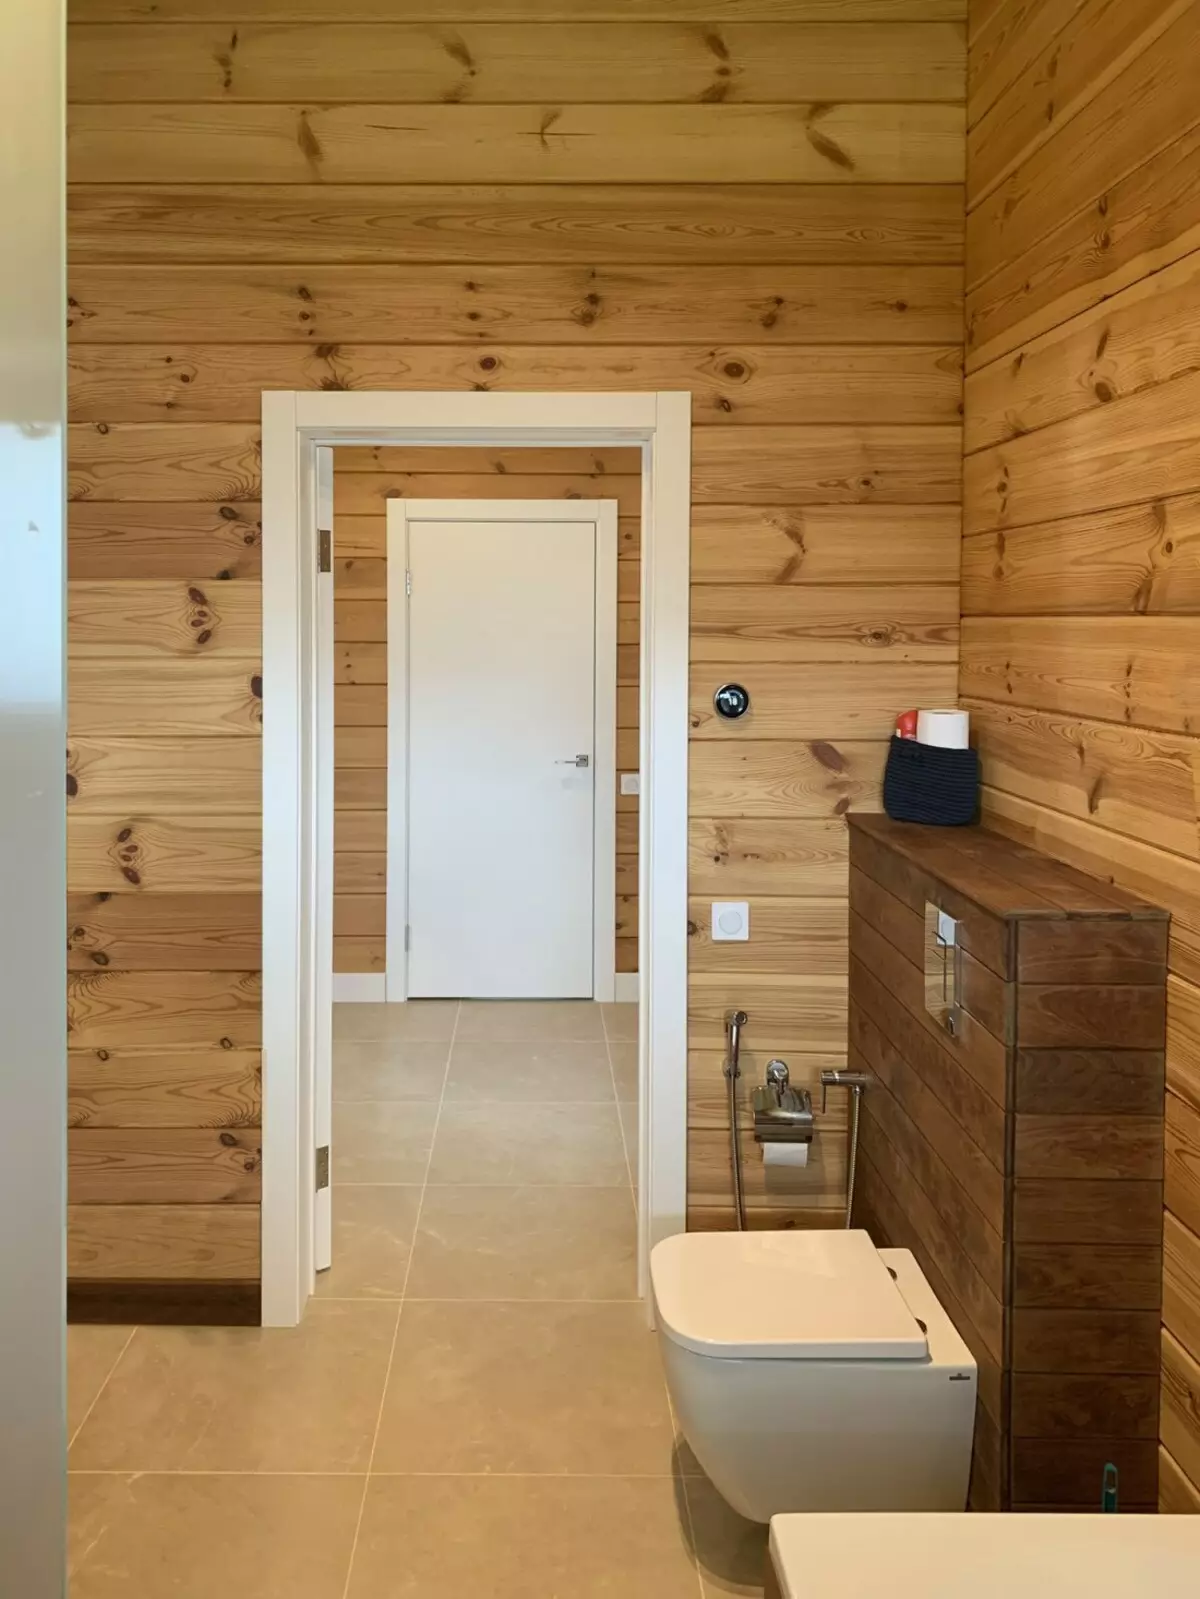 ห้องน้ำในบ้านไม้ (76 รูป): การออกแบบห้องพักในบ้านของบาร์ในประเทศตัวอย่างของพื้นเสร็จสิ้นแผนการระบายอากาศ 10475_20